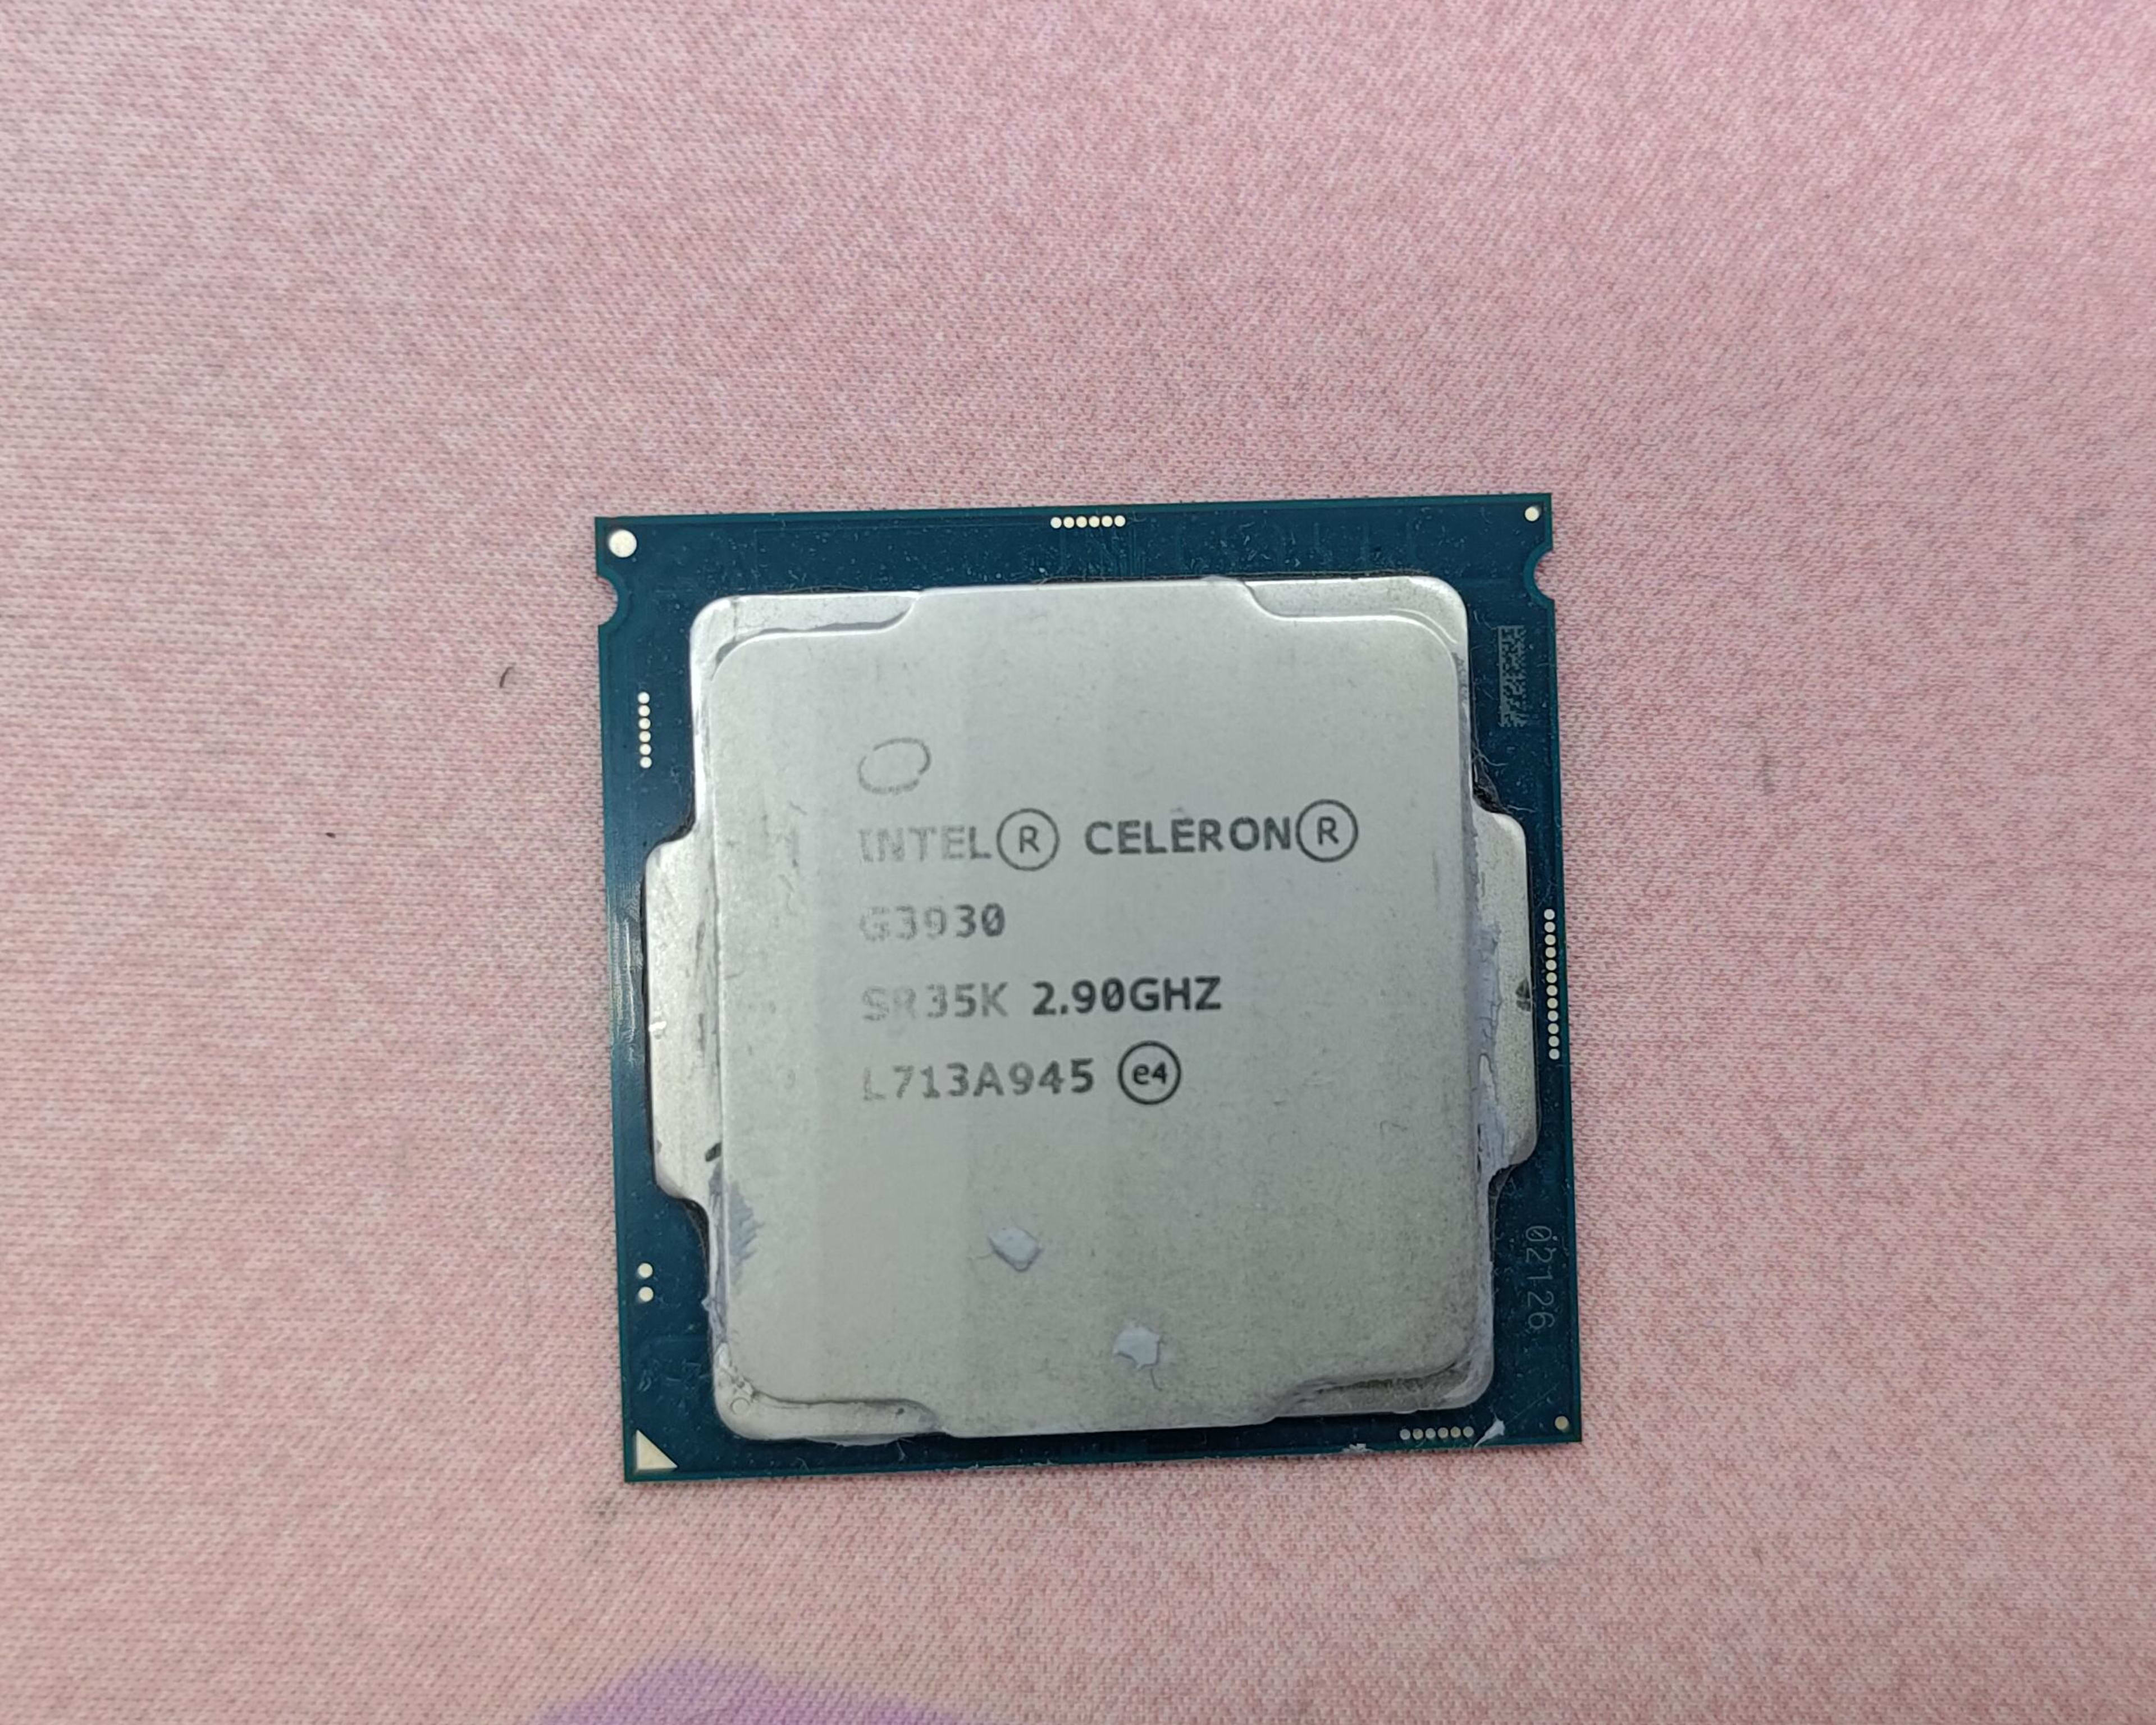 Intel Celeron G3930 Processor